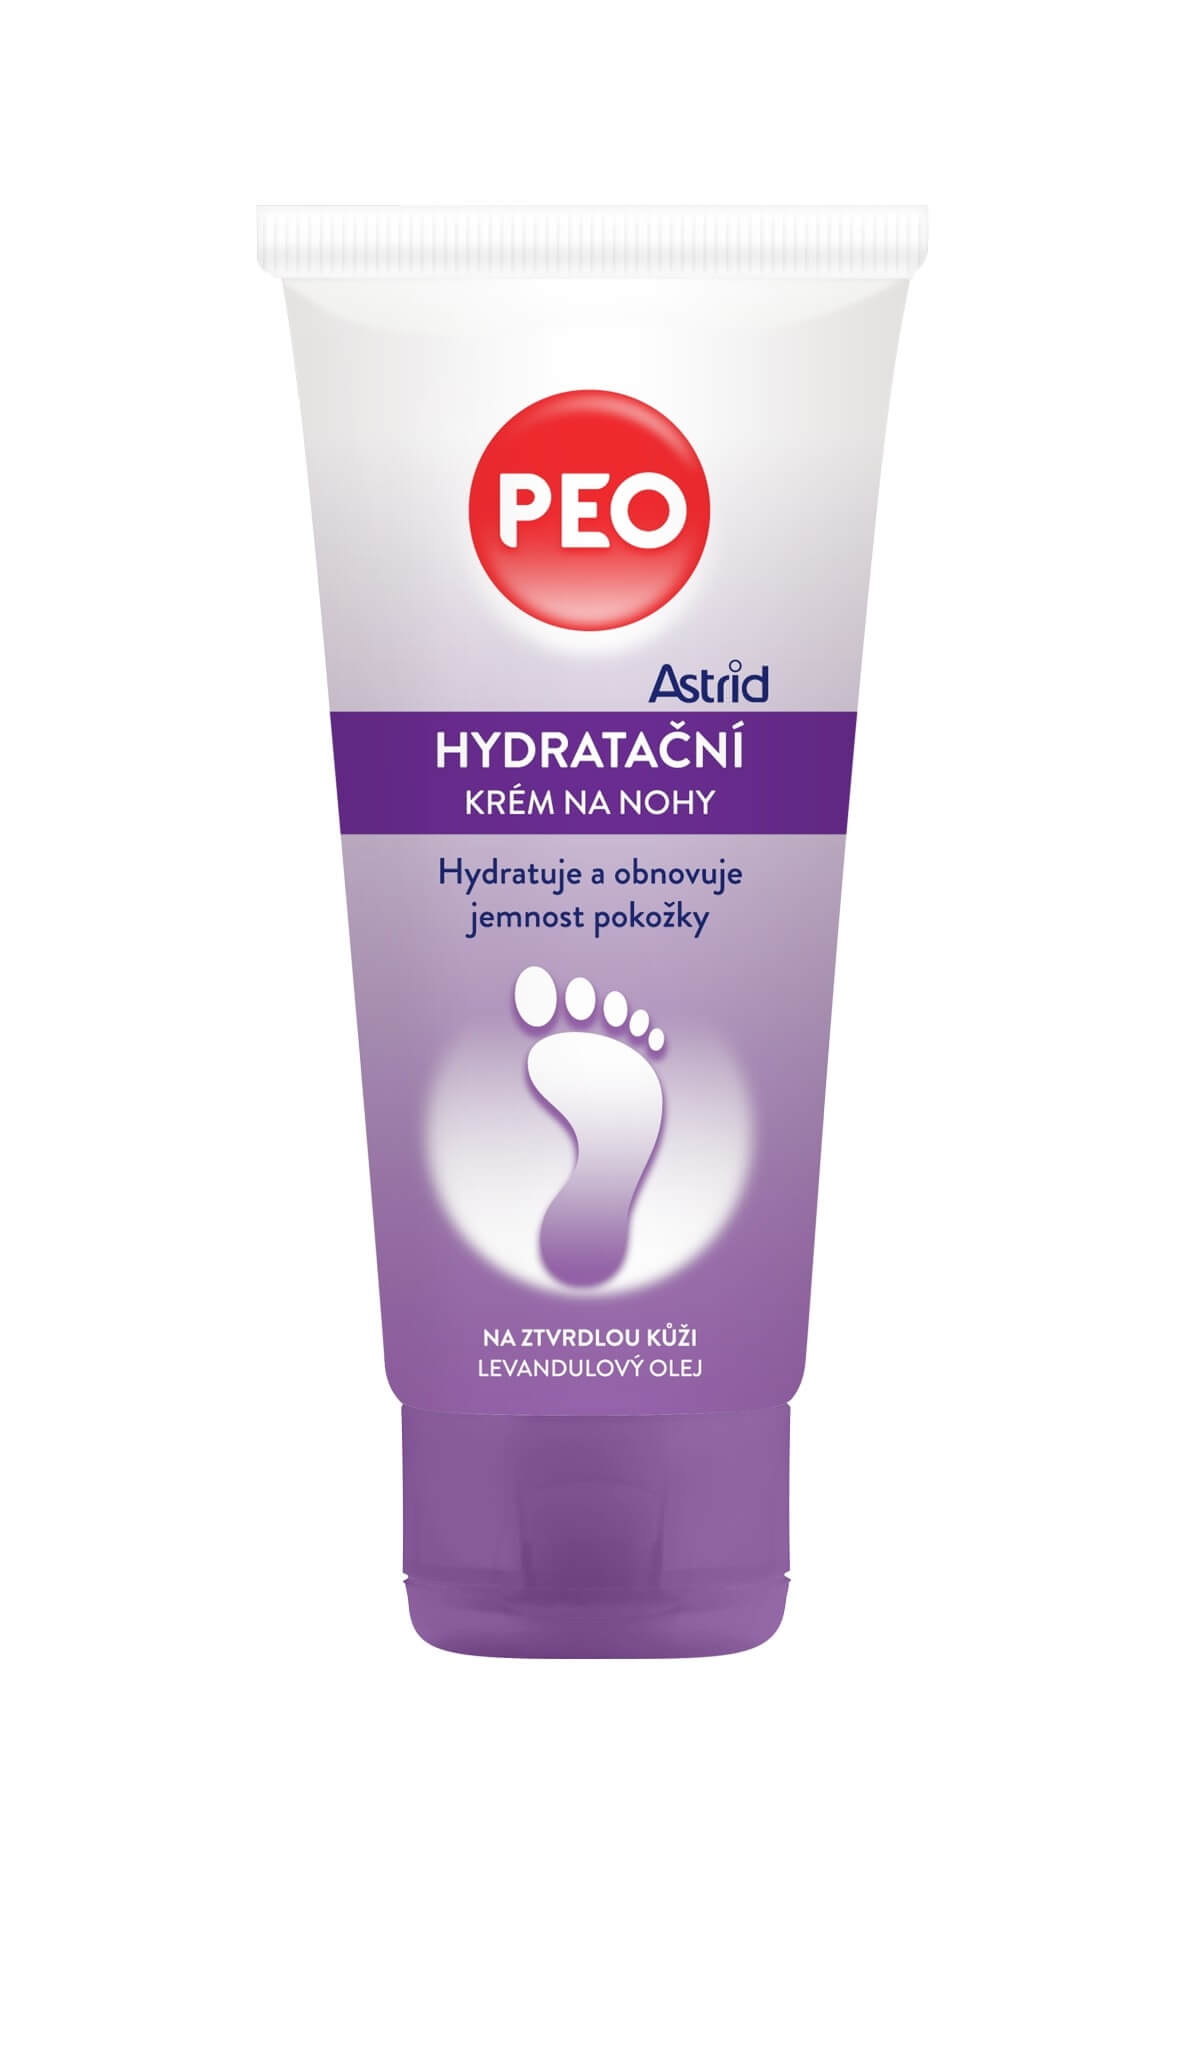 Astrid Hydratačný krém na nohy PEO 100 ml